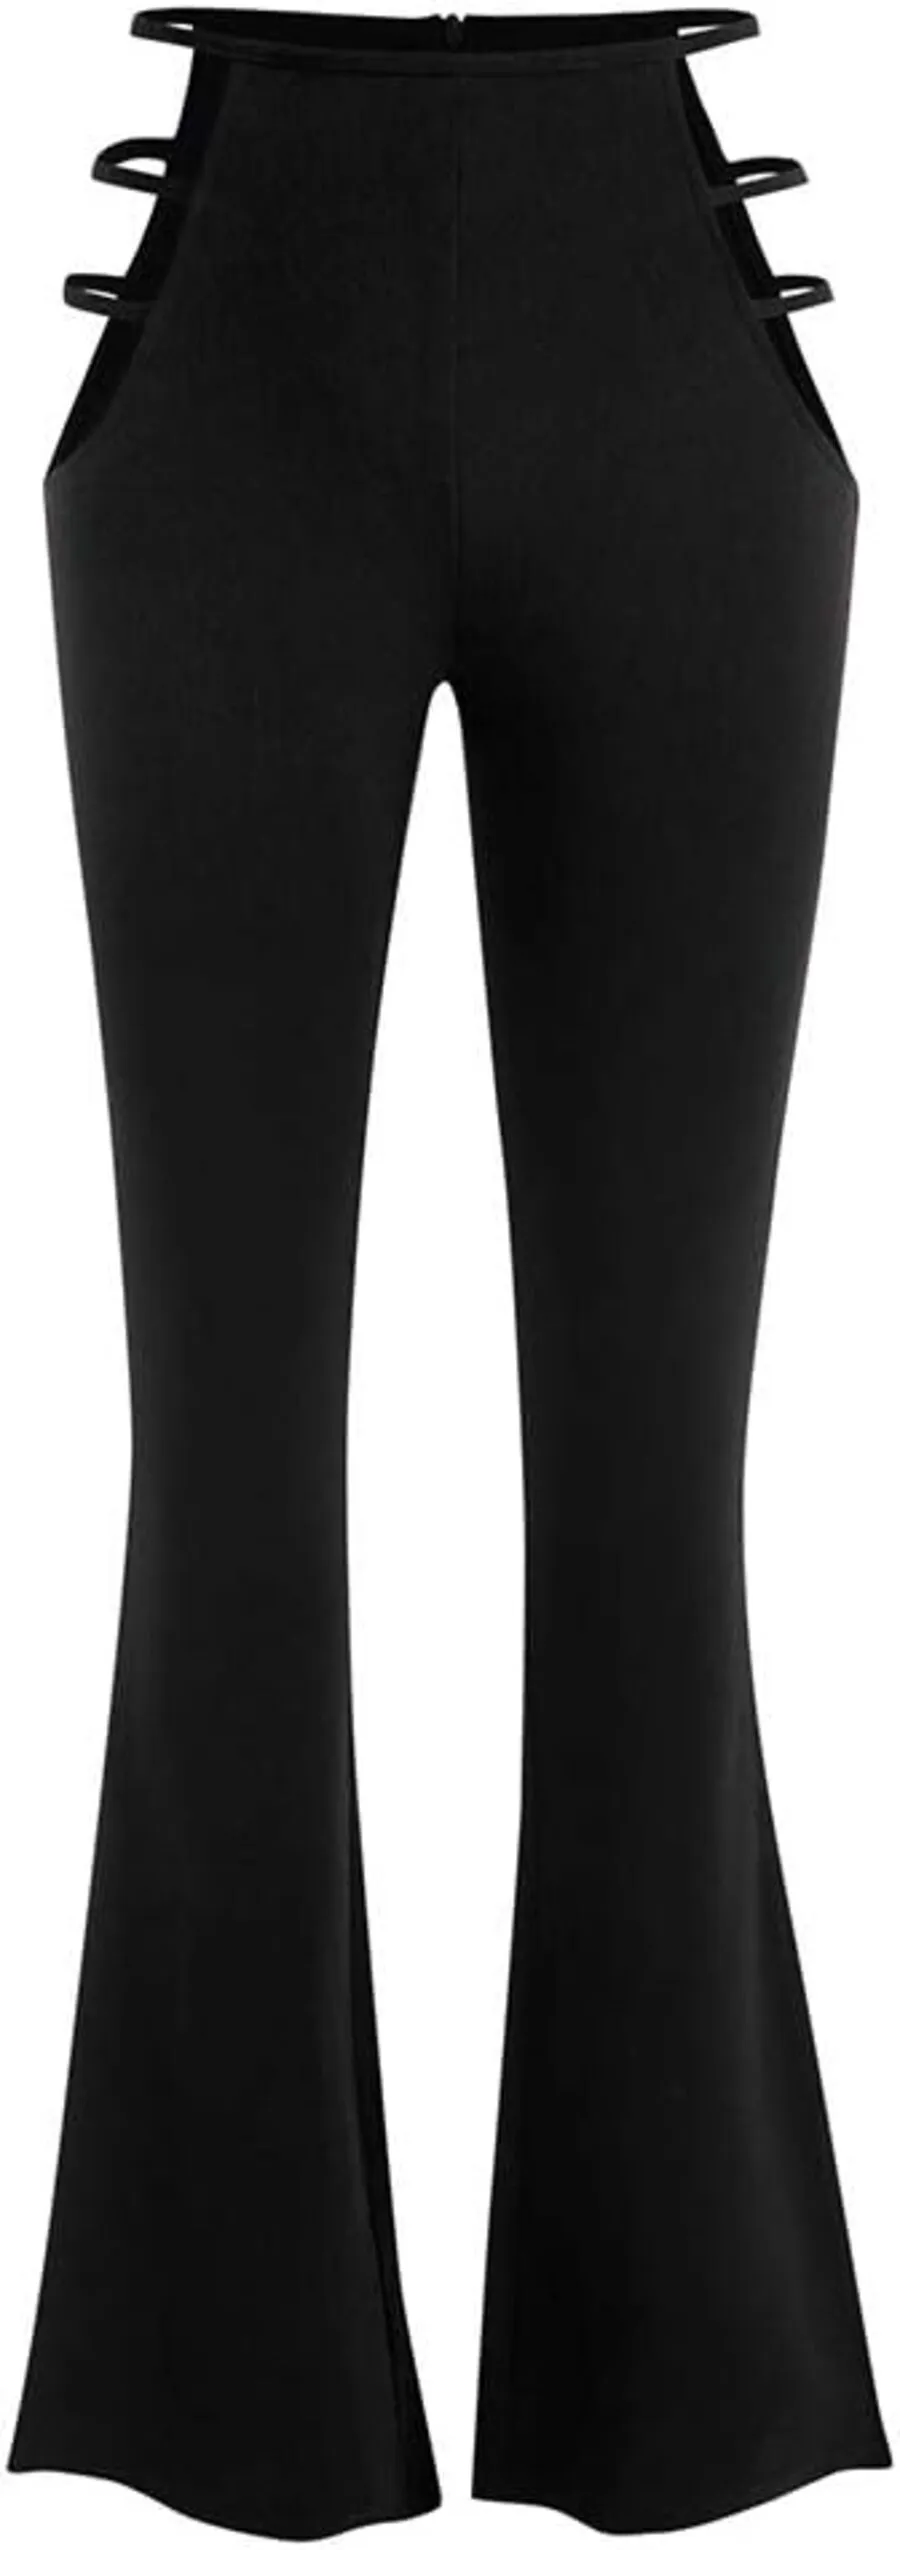 ZAFUL женские брюки с высокой талией и вырезами, текстурированные расклешенные брюки, широкие ночные брюки